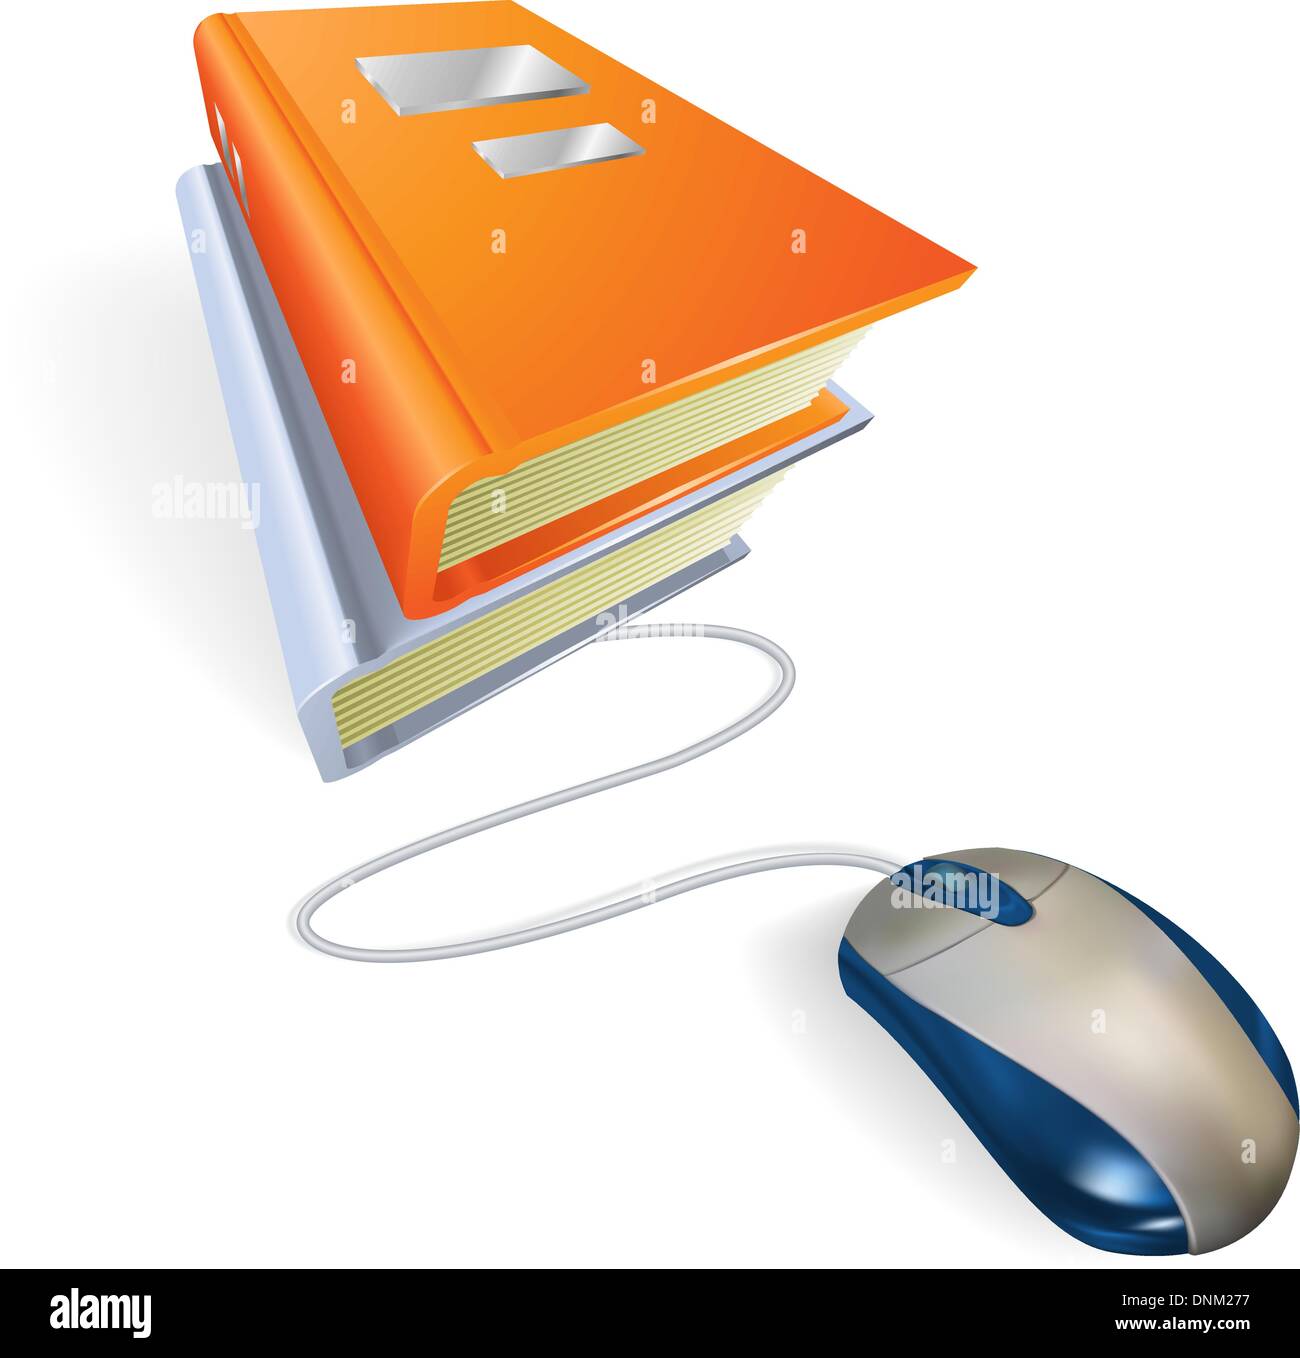 Une souris connectée à une pile de livres. Concept pour l'apprentissage en ligne d'internet, l'éducation, l'information du stockage ou e-books. Illustration de Vecteur